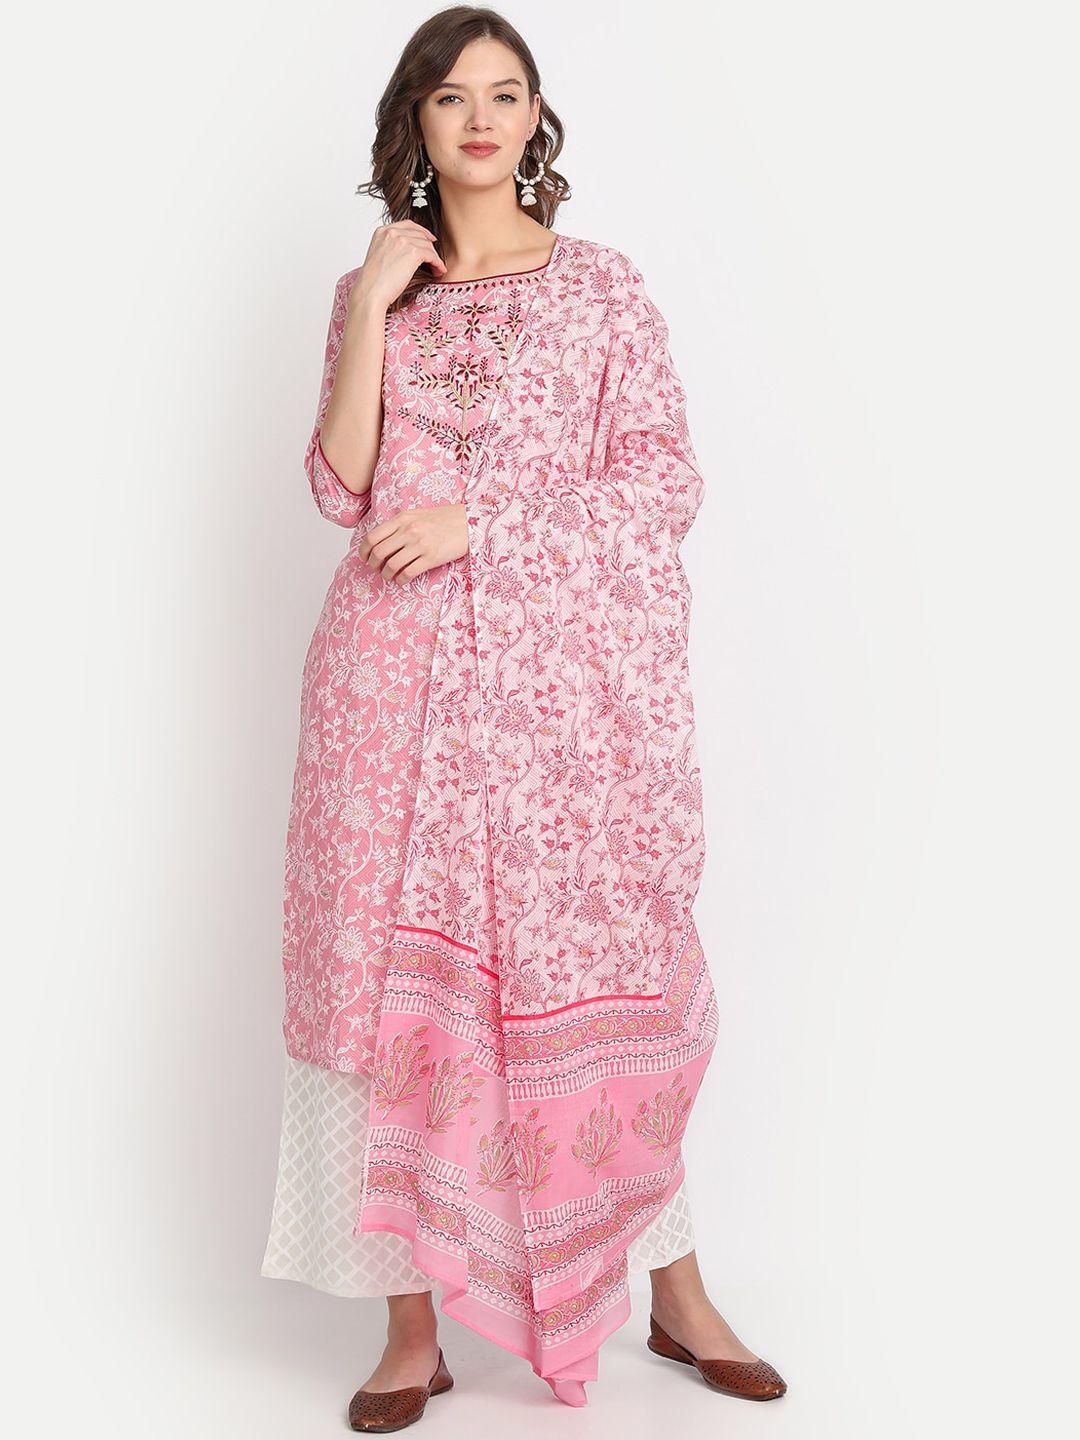 anubhutee-women-pink-ethnic-motifs-printed-pure-cotton-kurta-with-palazzos-&-dupatta